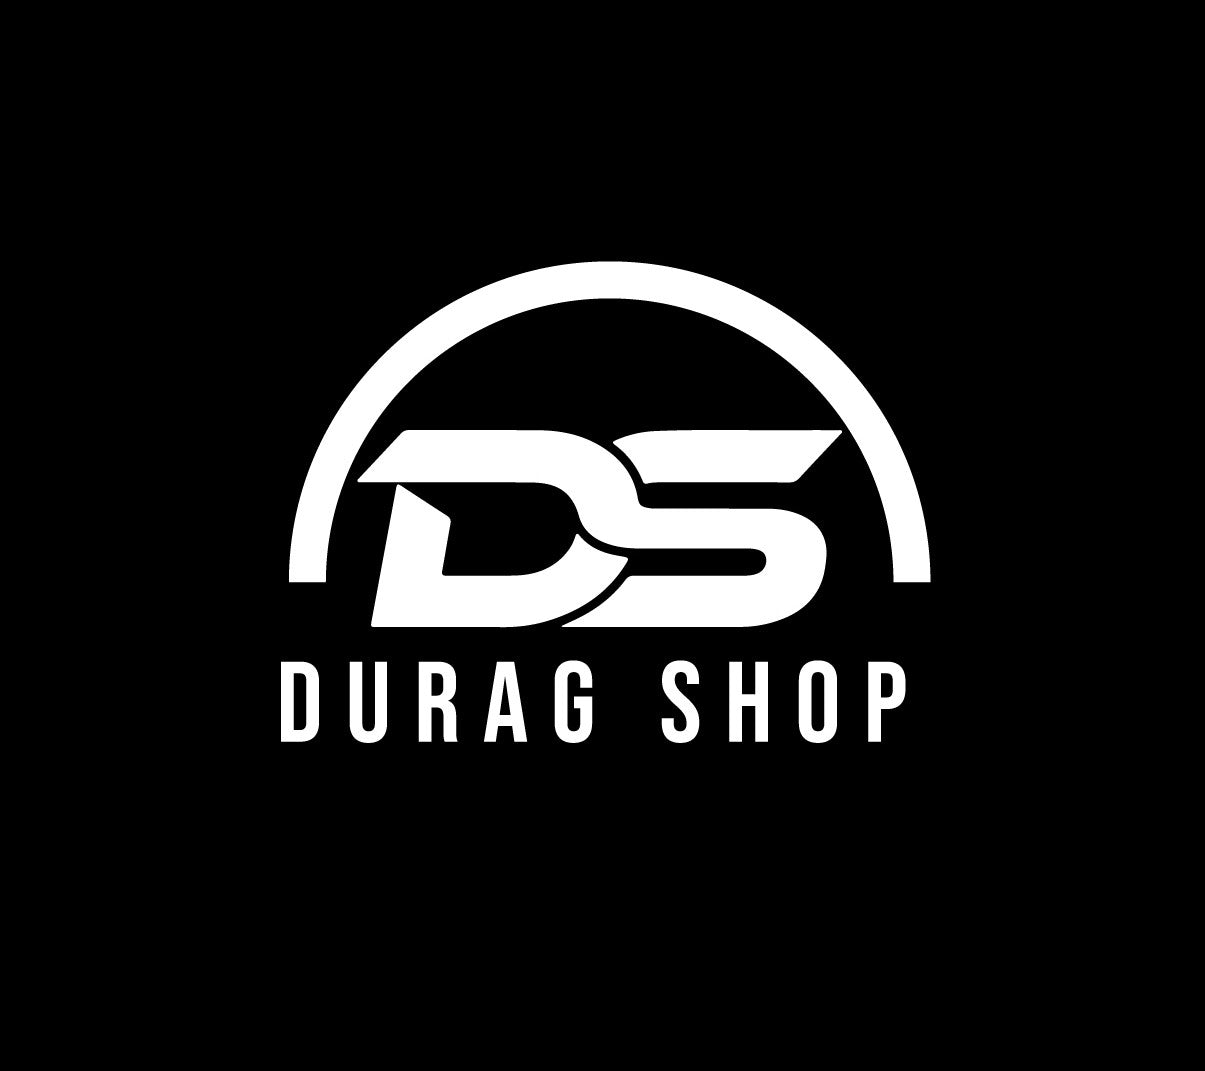 Durag Shop logo